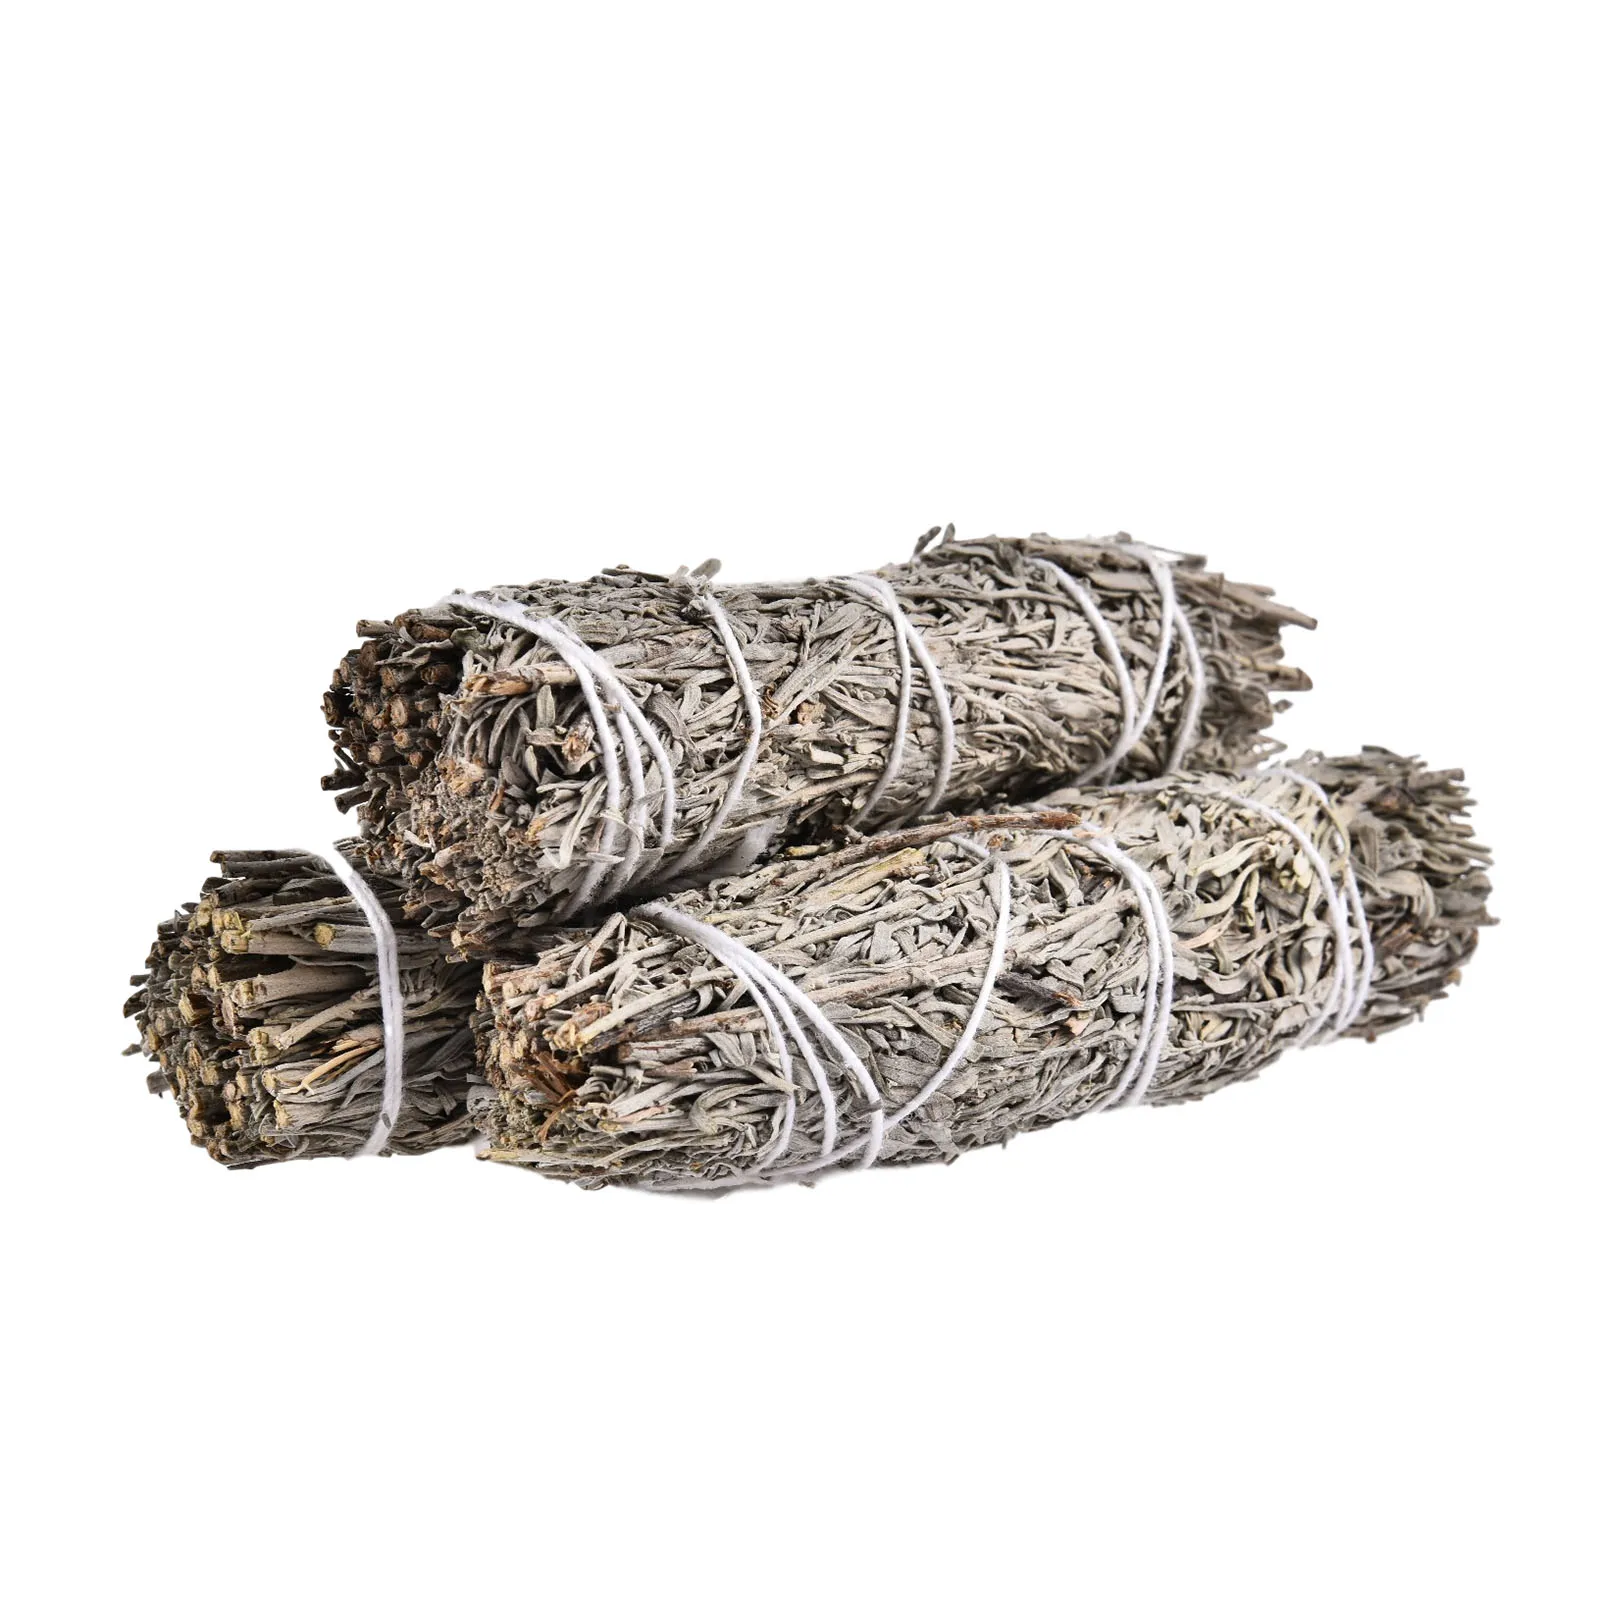 

3PCS White Sage Bundles Sage Smudge Sticks Indoor Fragrance For Home Cleansing Healing Meditation Smudging Rituals